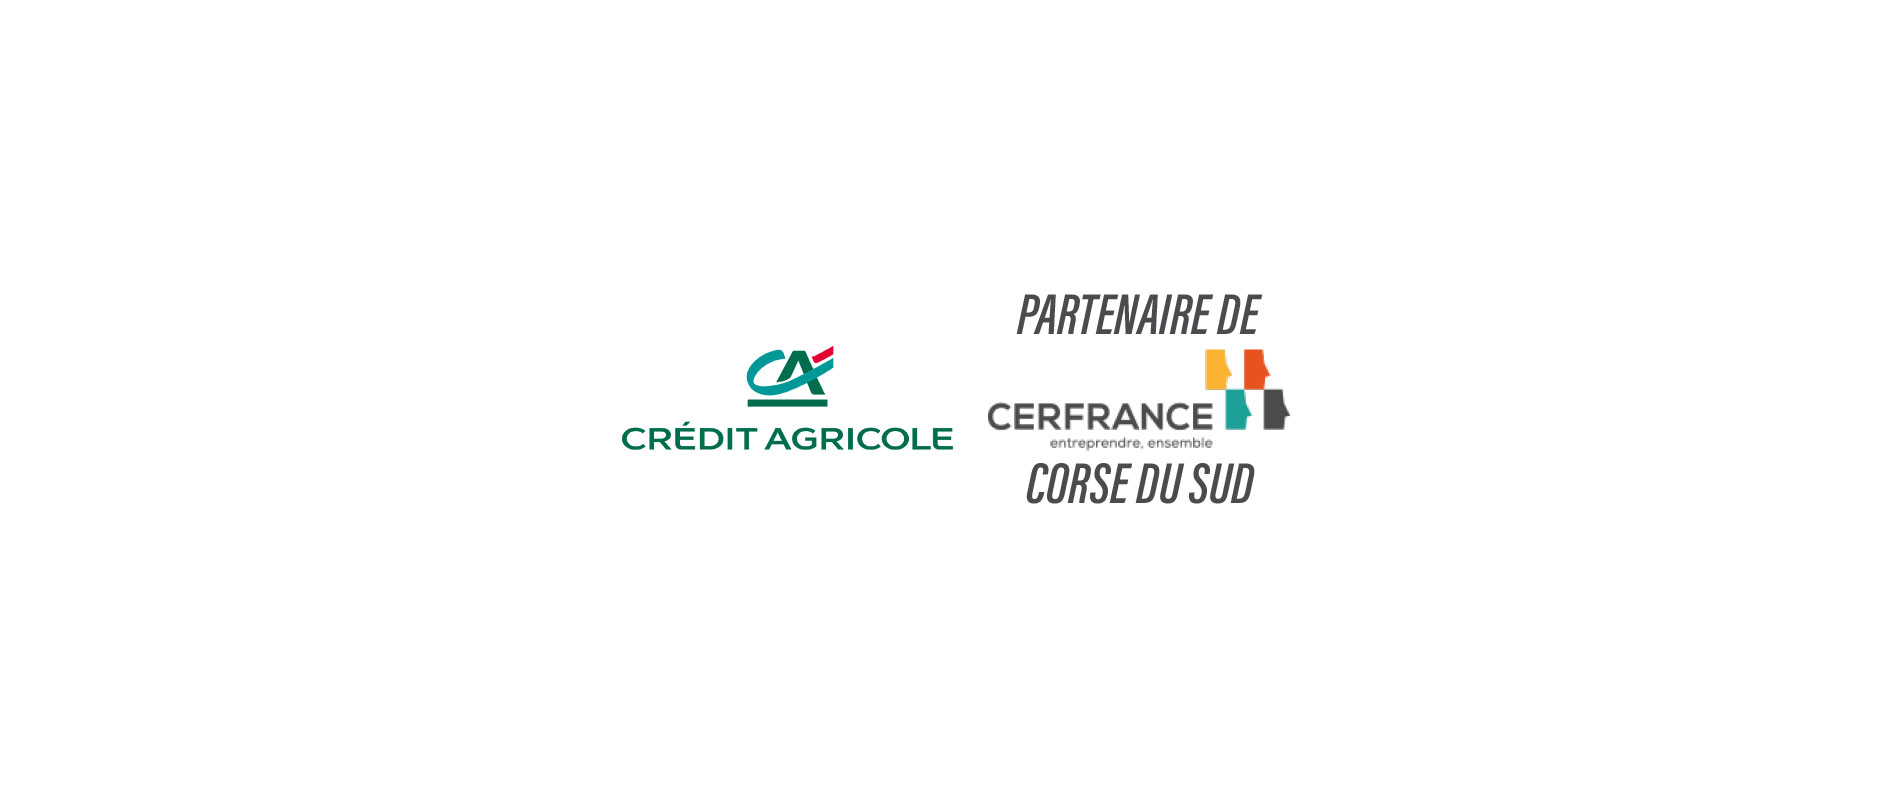 Partenariat : Crédit Agricole